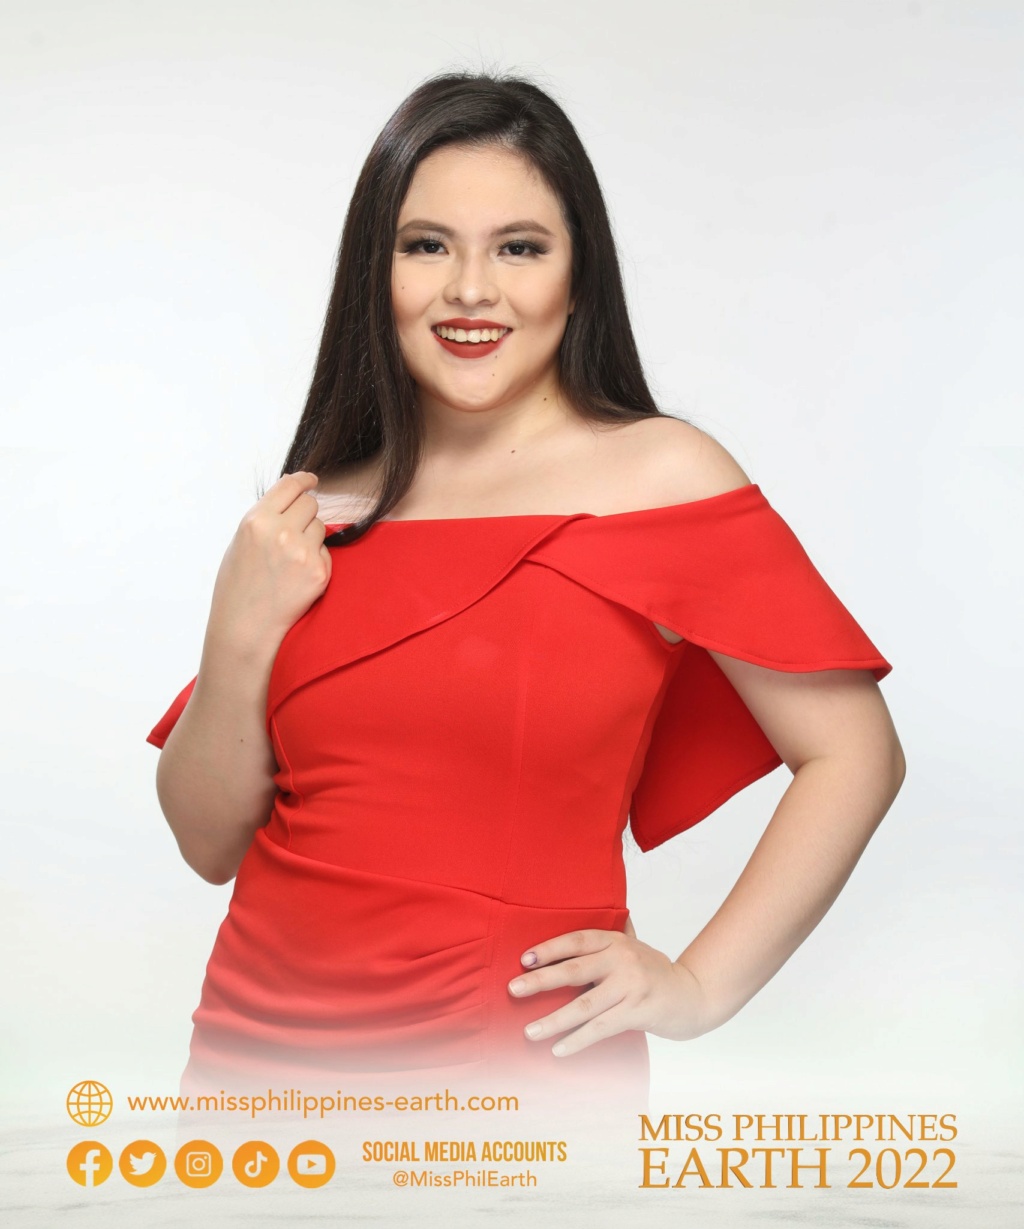 Miss Philippines Earth 2022 is Jenny Ramp from Santa Ignacia, Tarlac 28093210